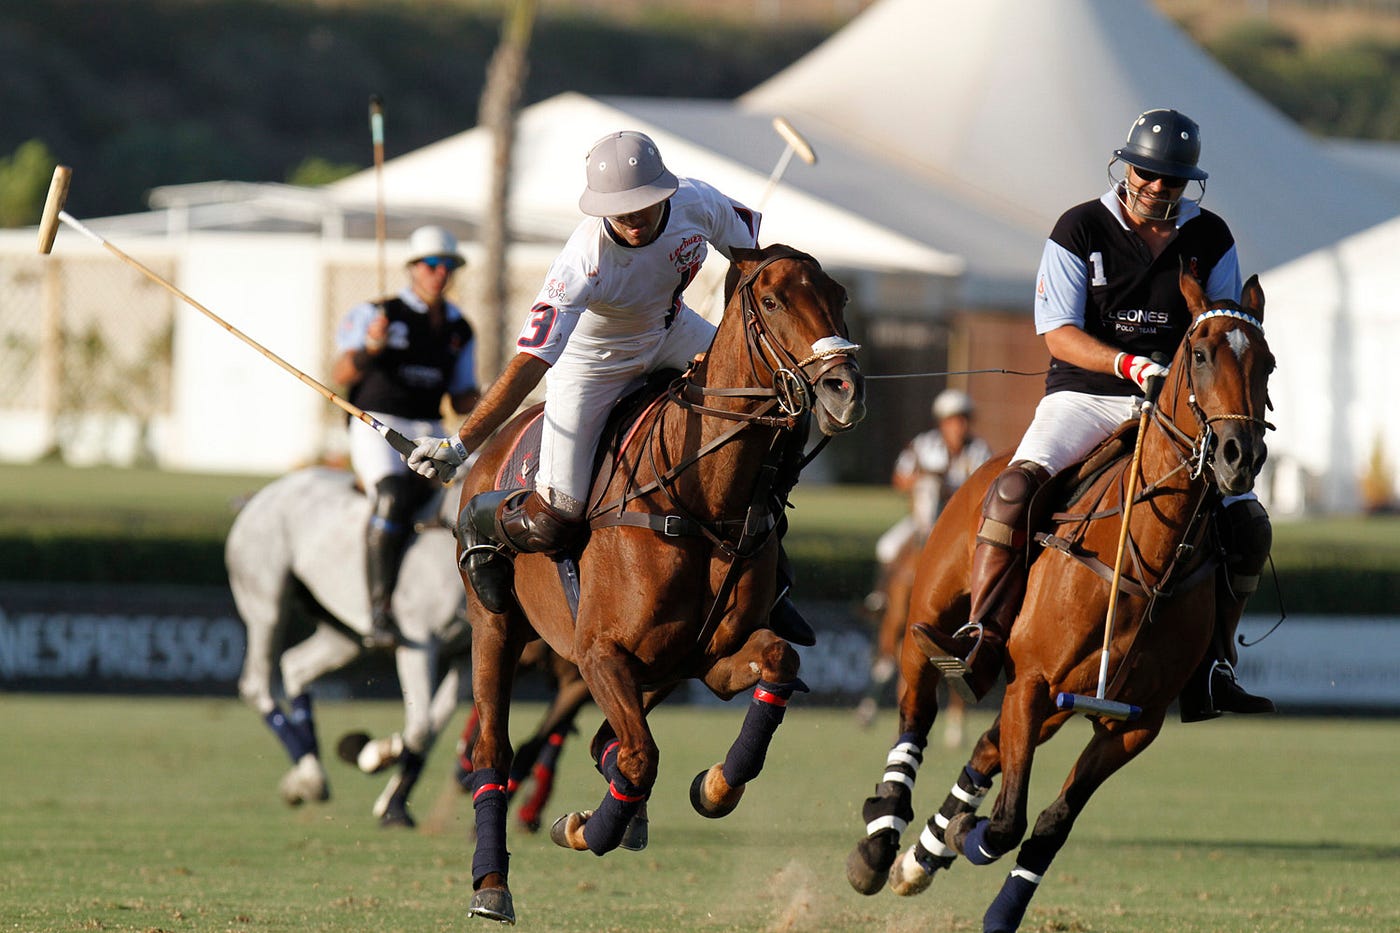 Juego de Polo. ¿Cómo surge el Polo como deporte? | by Horses Polo Argentino  | Medium